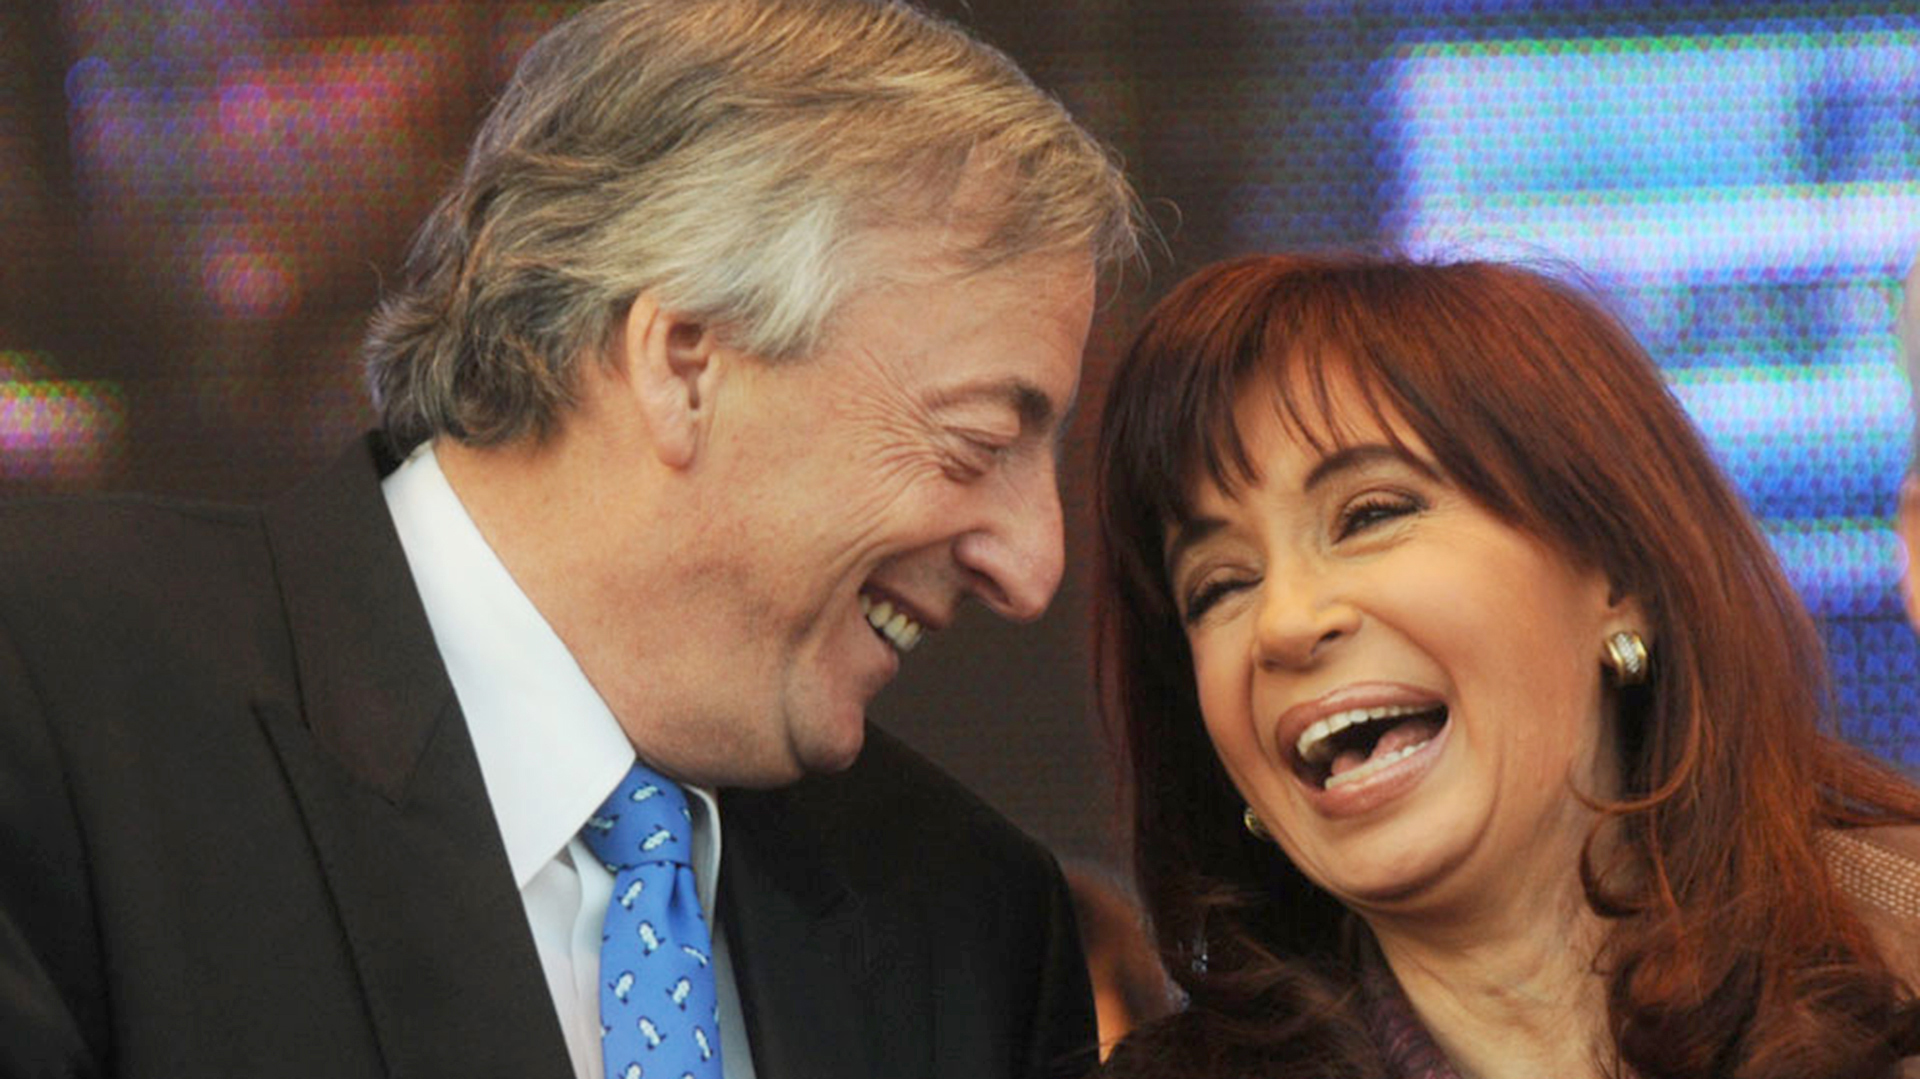 Cristina Kirchner descartó buscar la presidencia tras condena por corrupción: “No voy a ser candidata a nada”